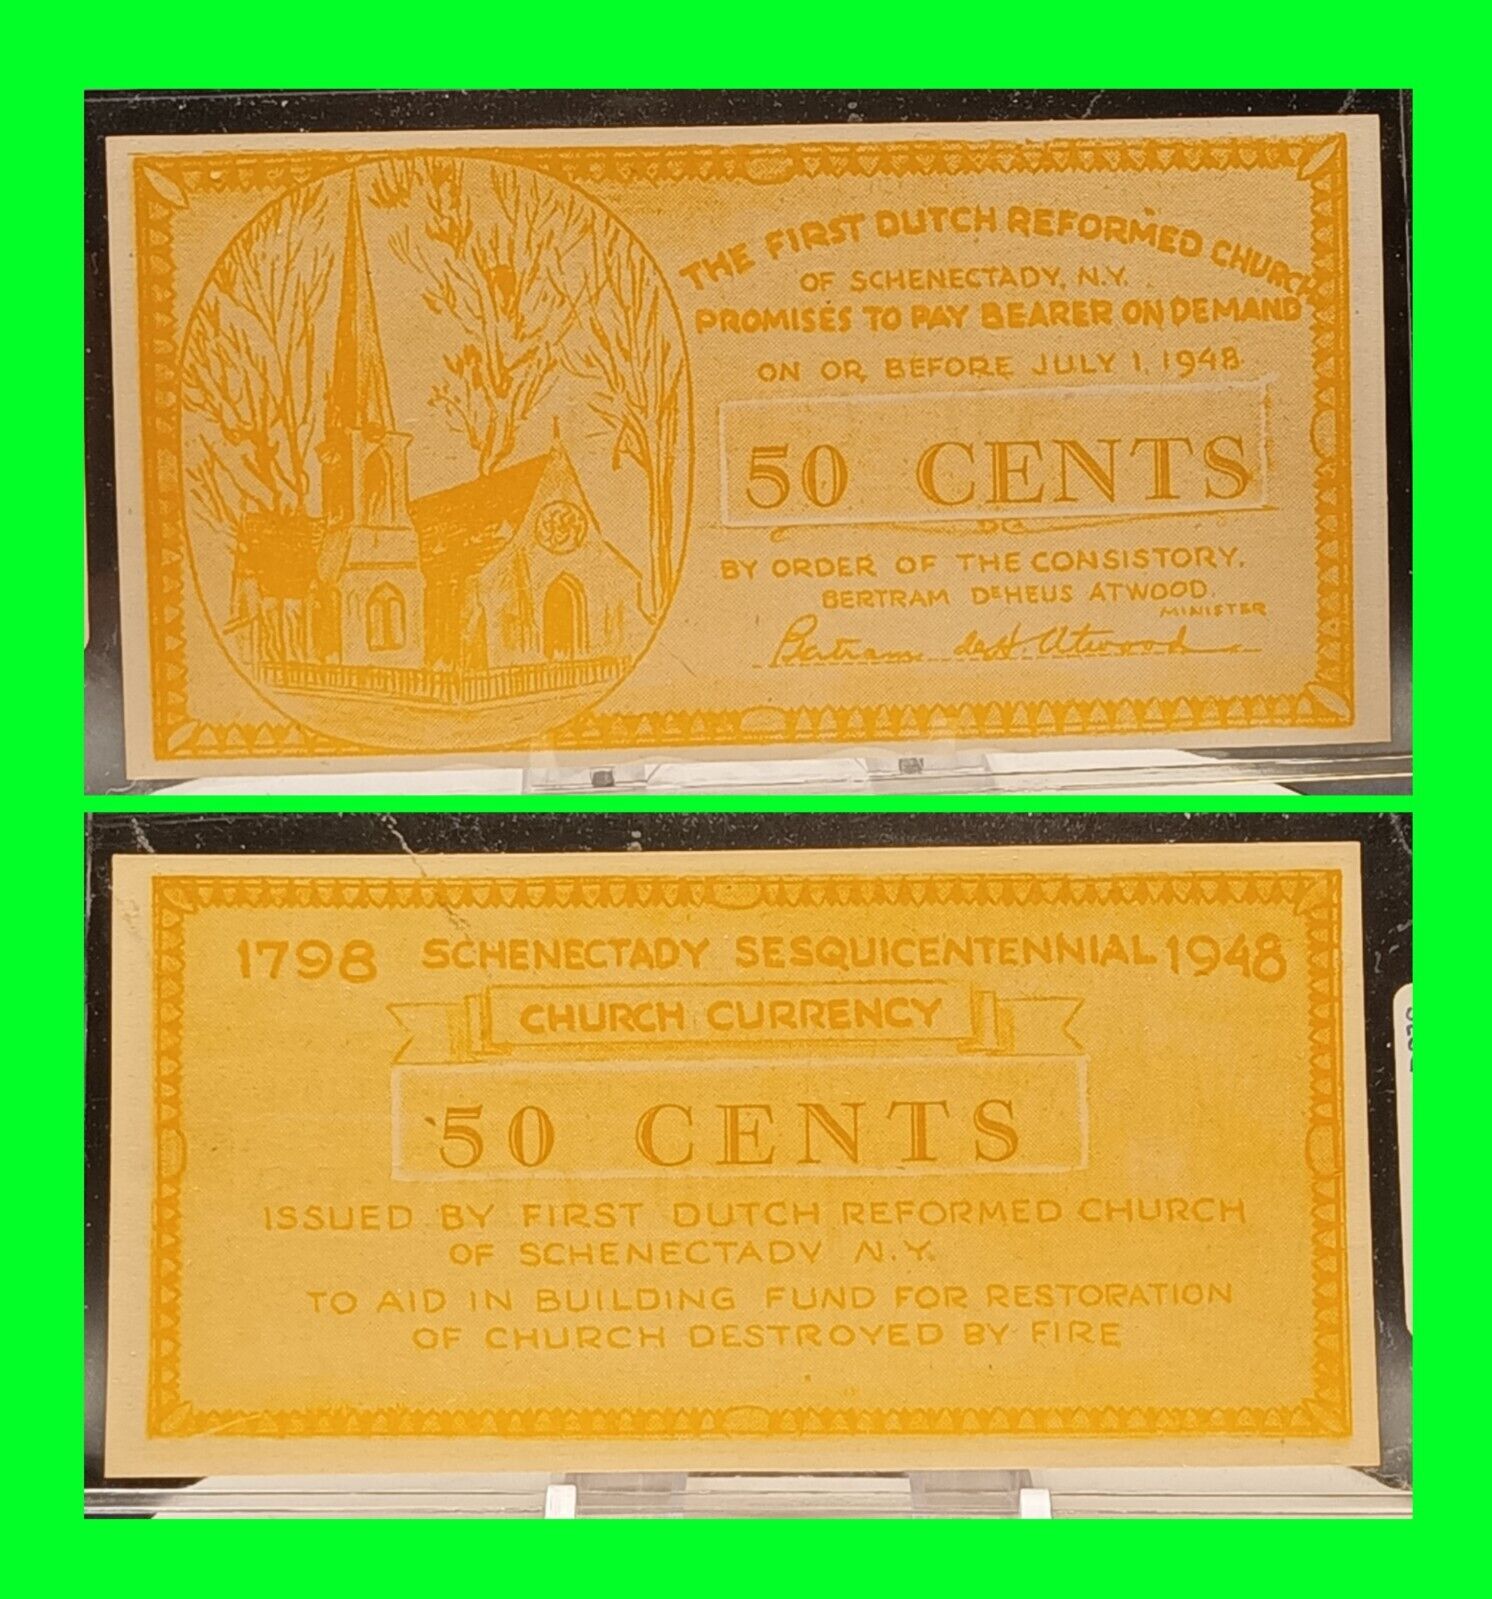 1948 First Dutch Reformed Church Schenectady New York 50 Cents